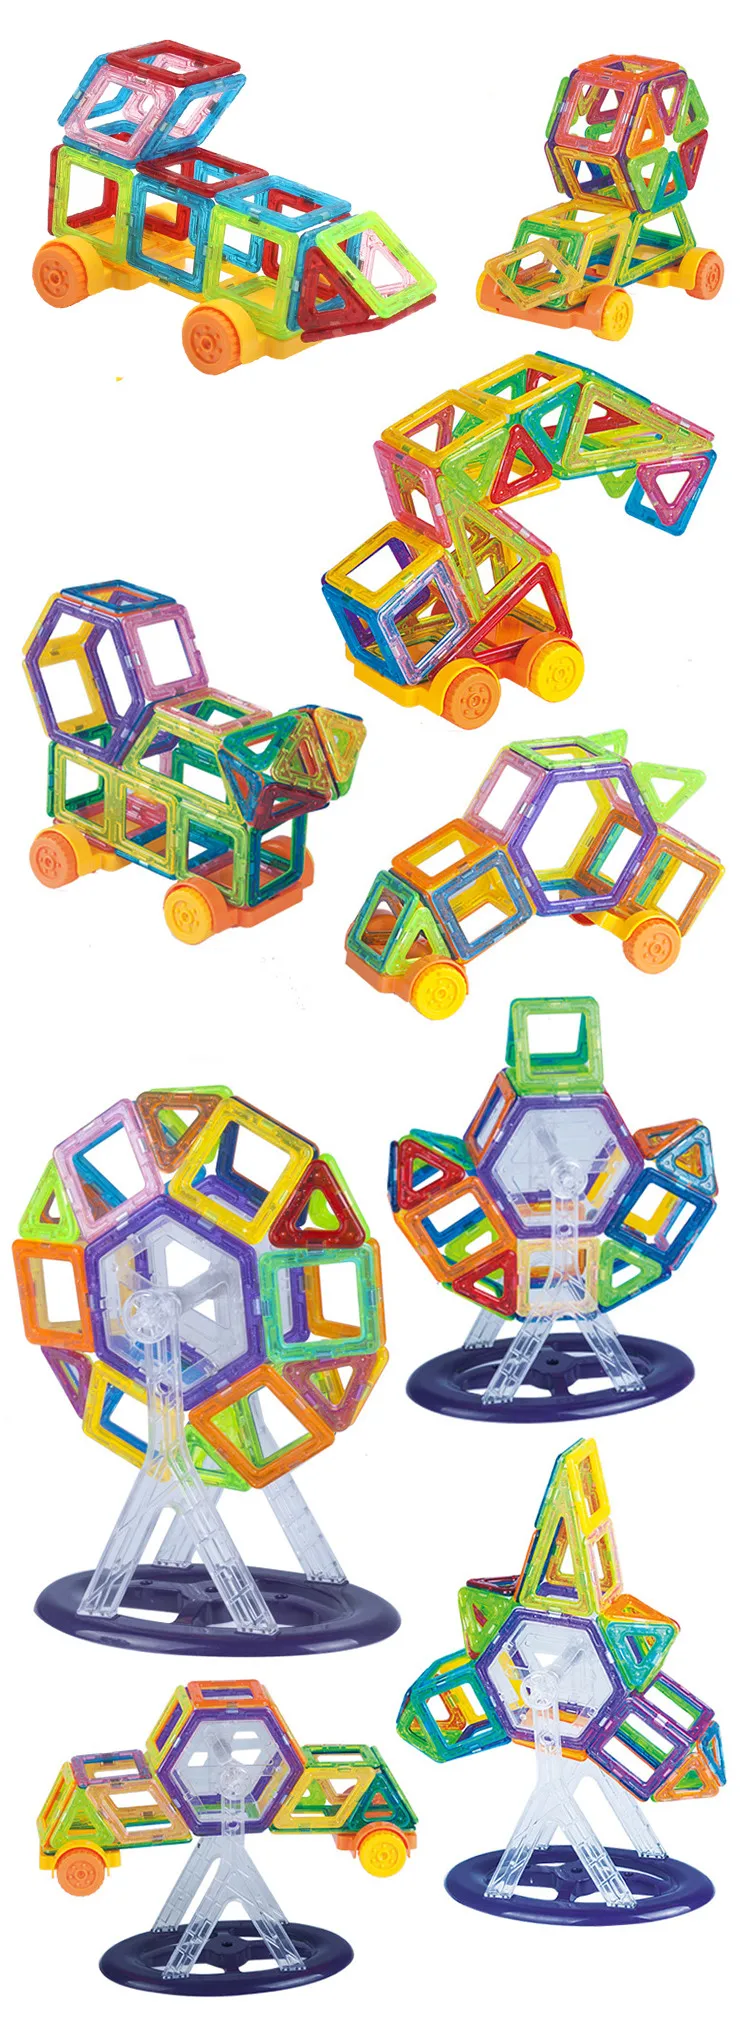 Робот магнитный конструктор Мини Строительные блоки 80 шт. строительные игрушки детские развивающие игрушки Пластиковые Креативные кирпичи обучающие игрушки